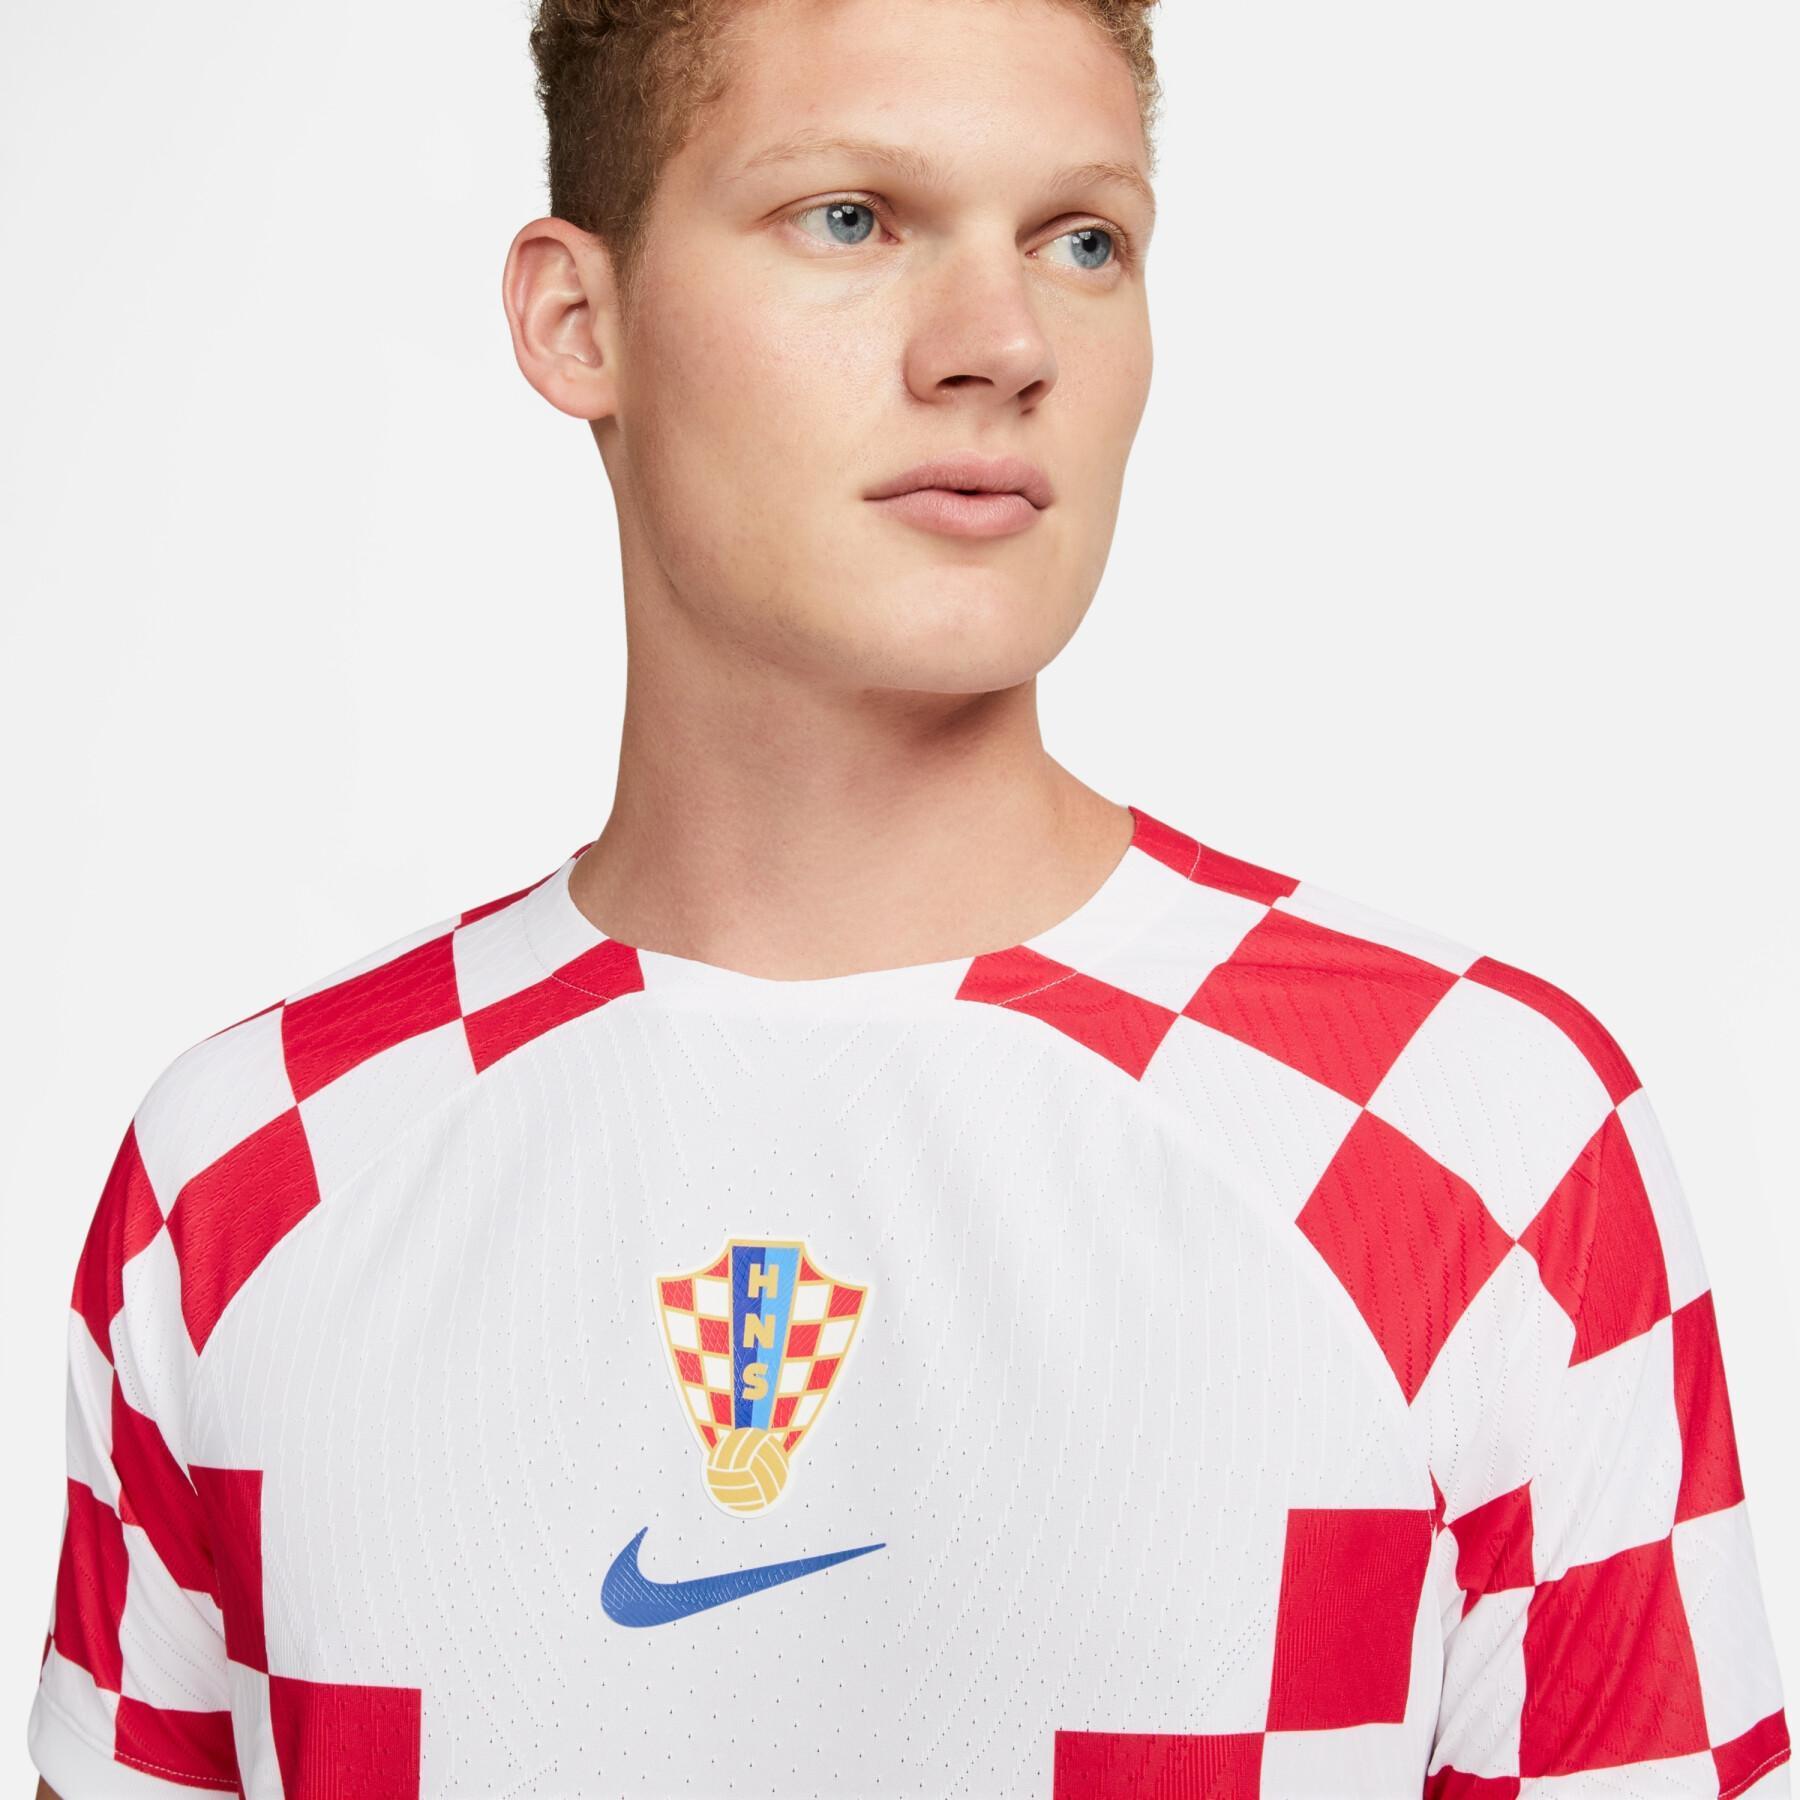 Authentisches Heimtrikot der Fußball-Weltmeisterschaft 2022 Croatie